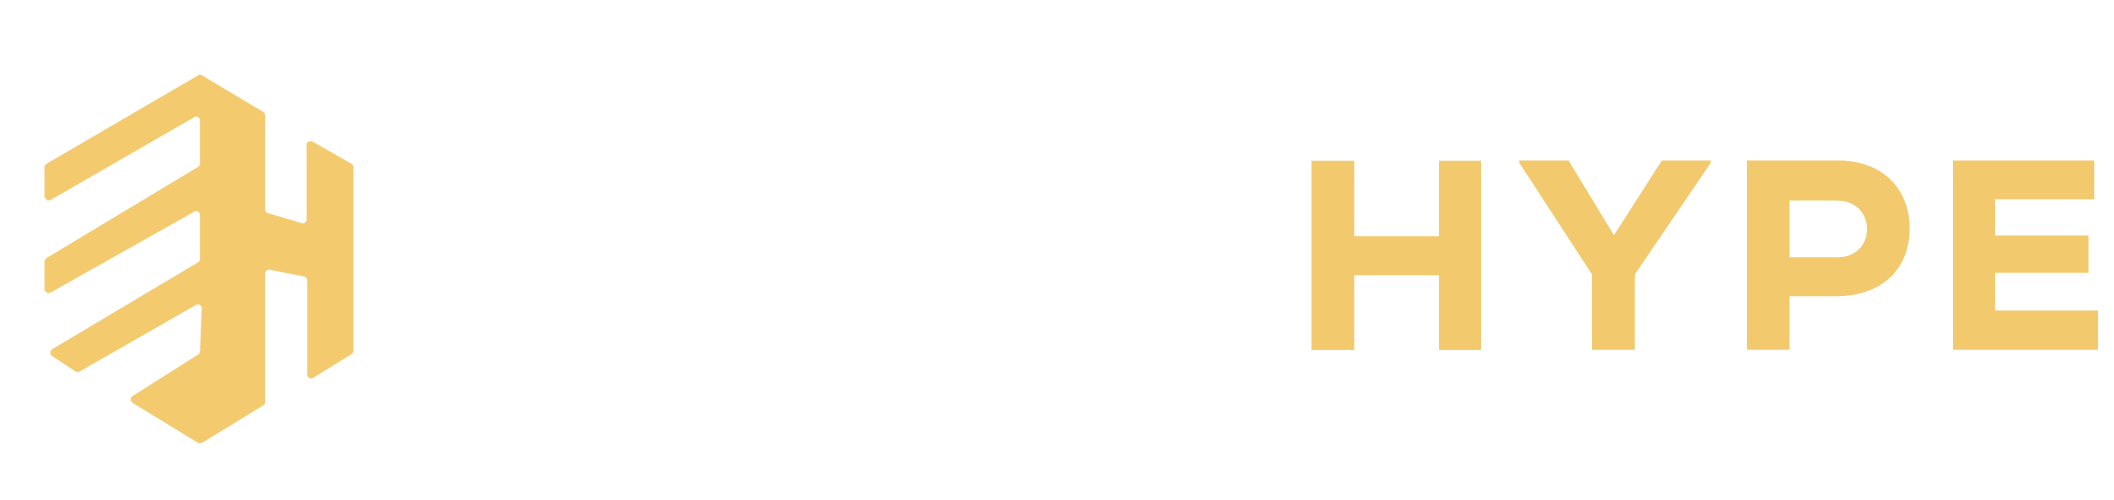 Ecom hype logo